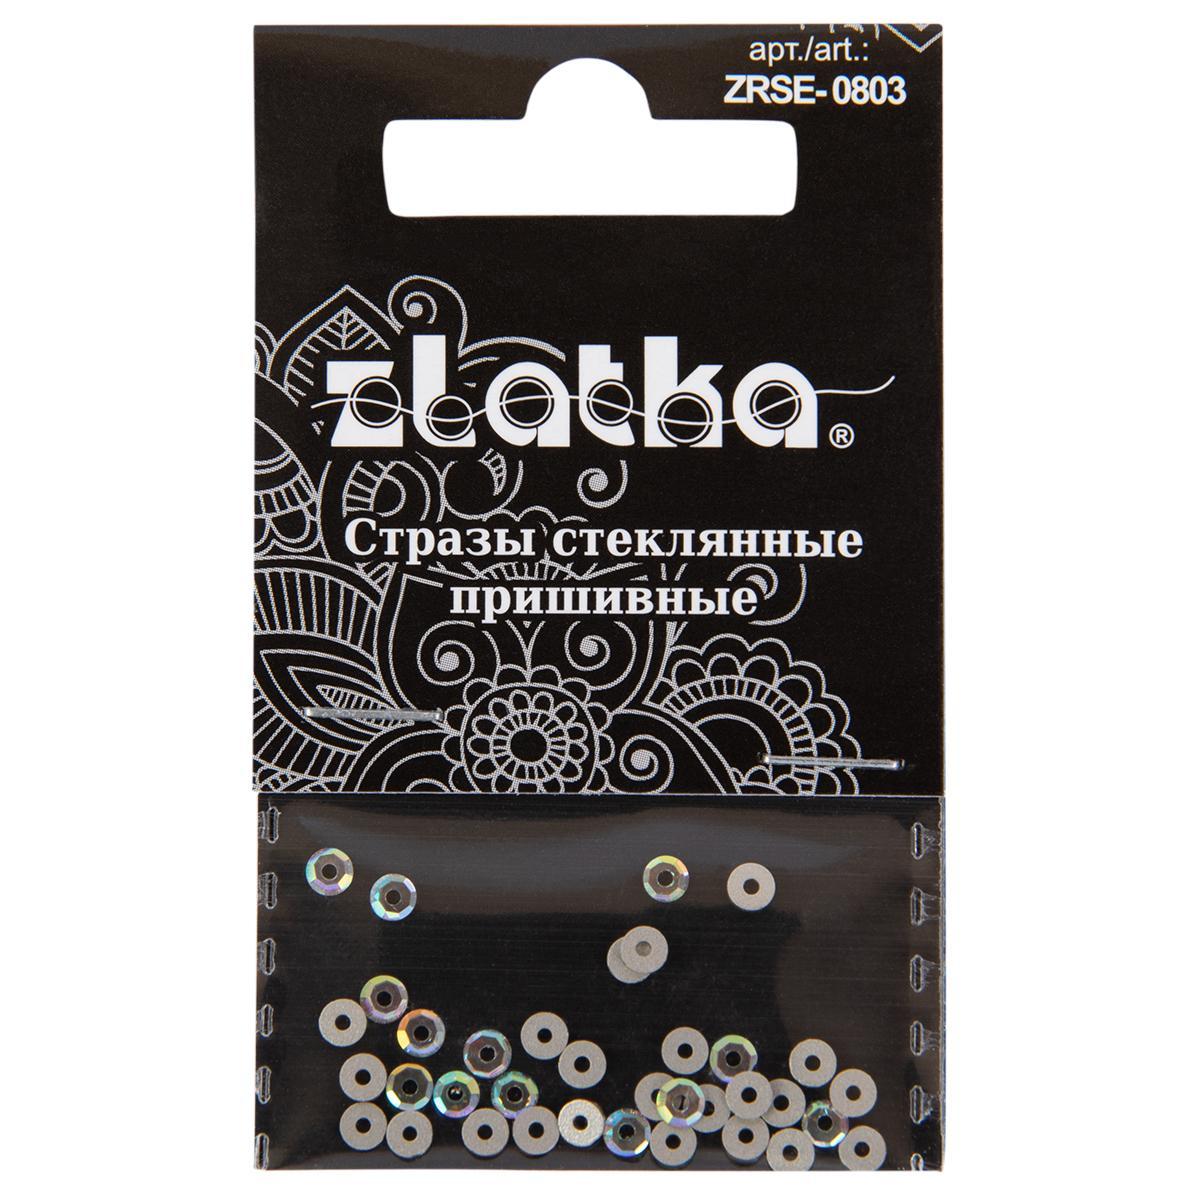 Страз "Zlatka" ZRSE-0803 AB-Crystal 3 мм стекло 5 x 36 шт в пакете с картонным еврослотом